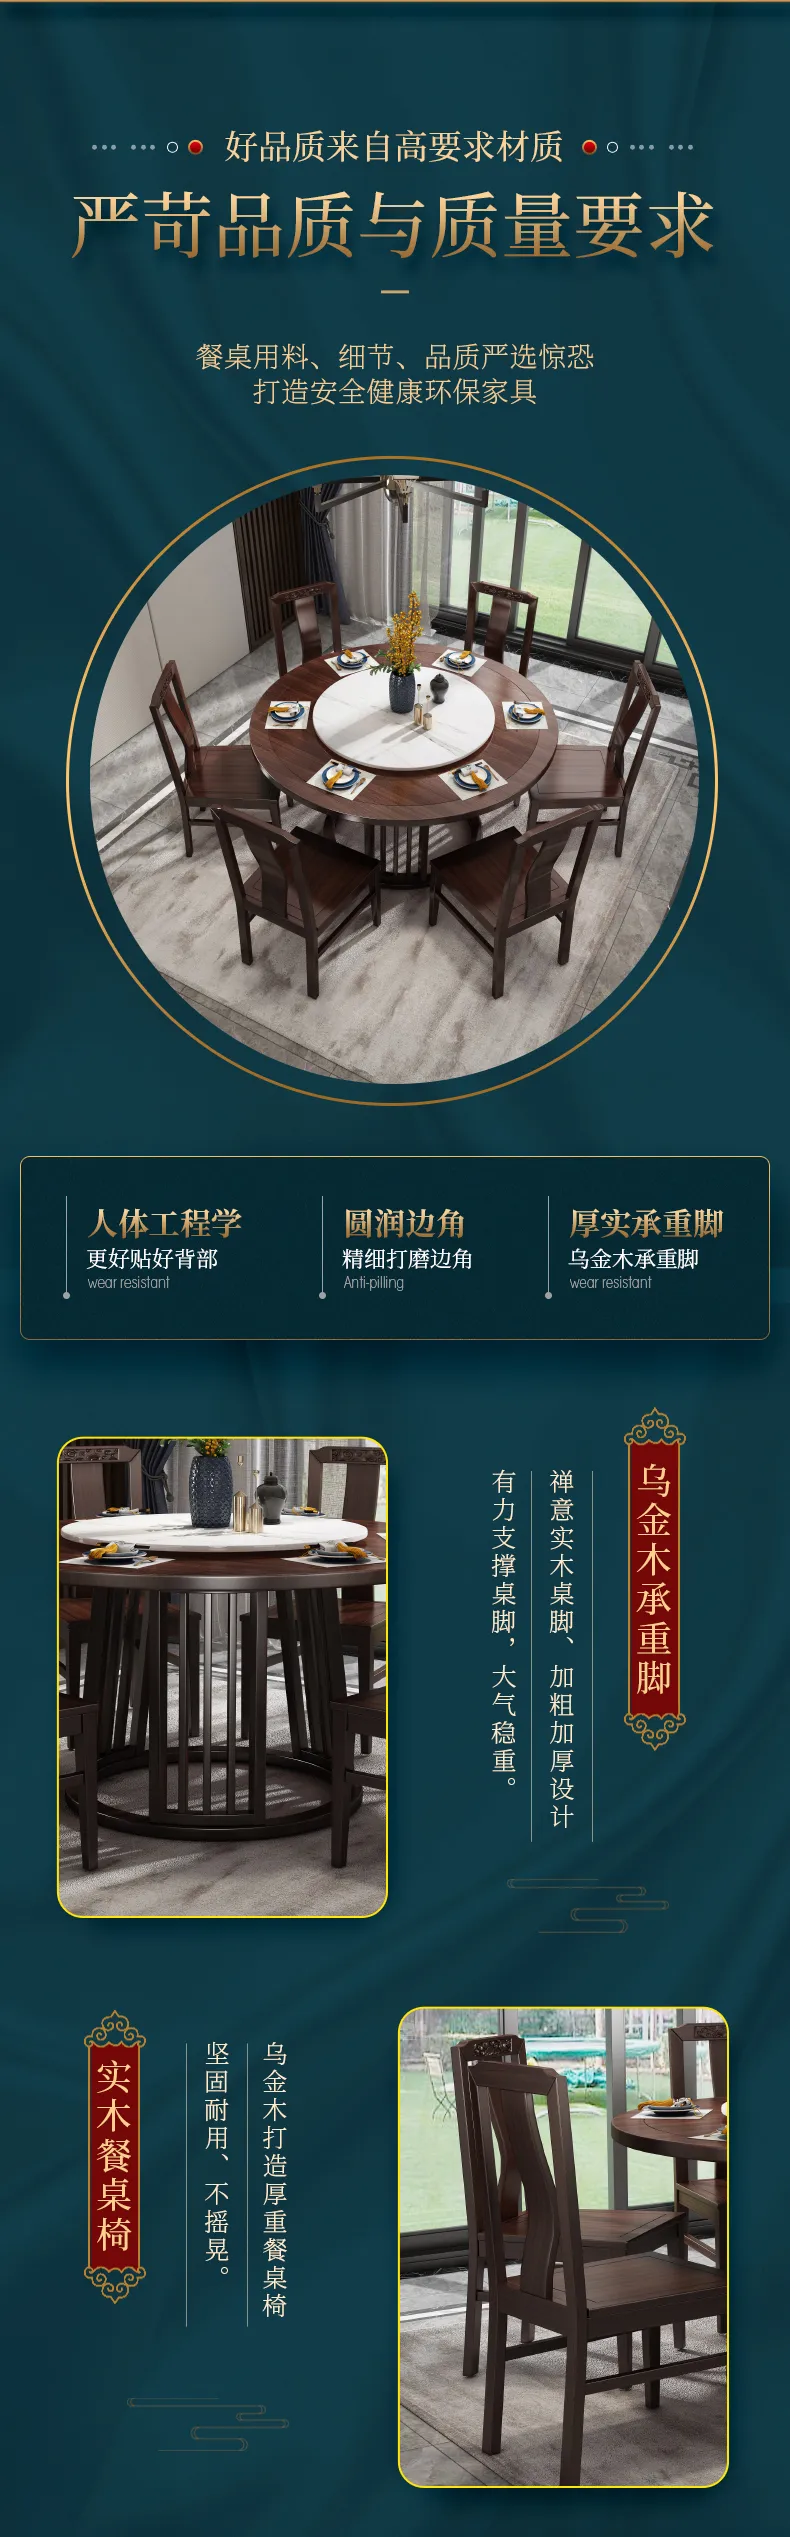 华松居 乌金木新中式实木餐桌简约家用圆桌饭桌餐桌椅 #2002(图4)